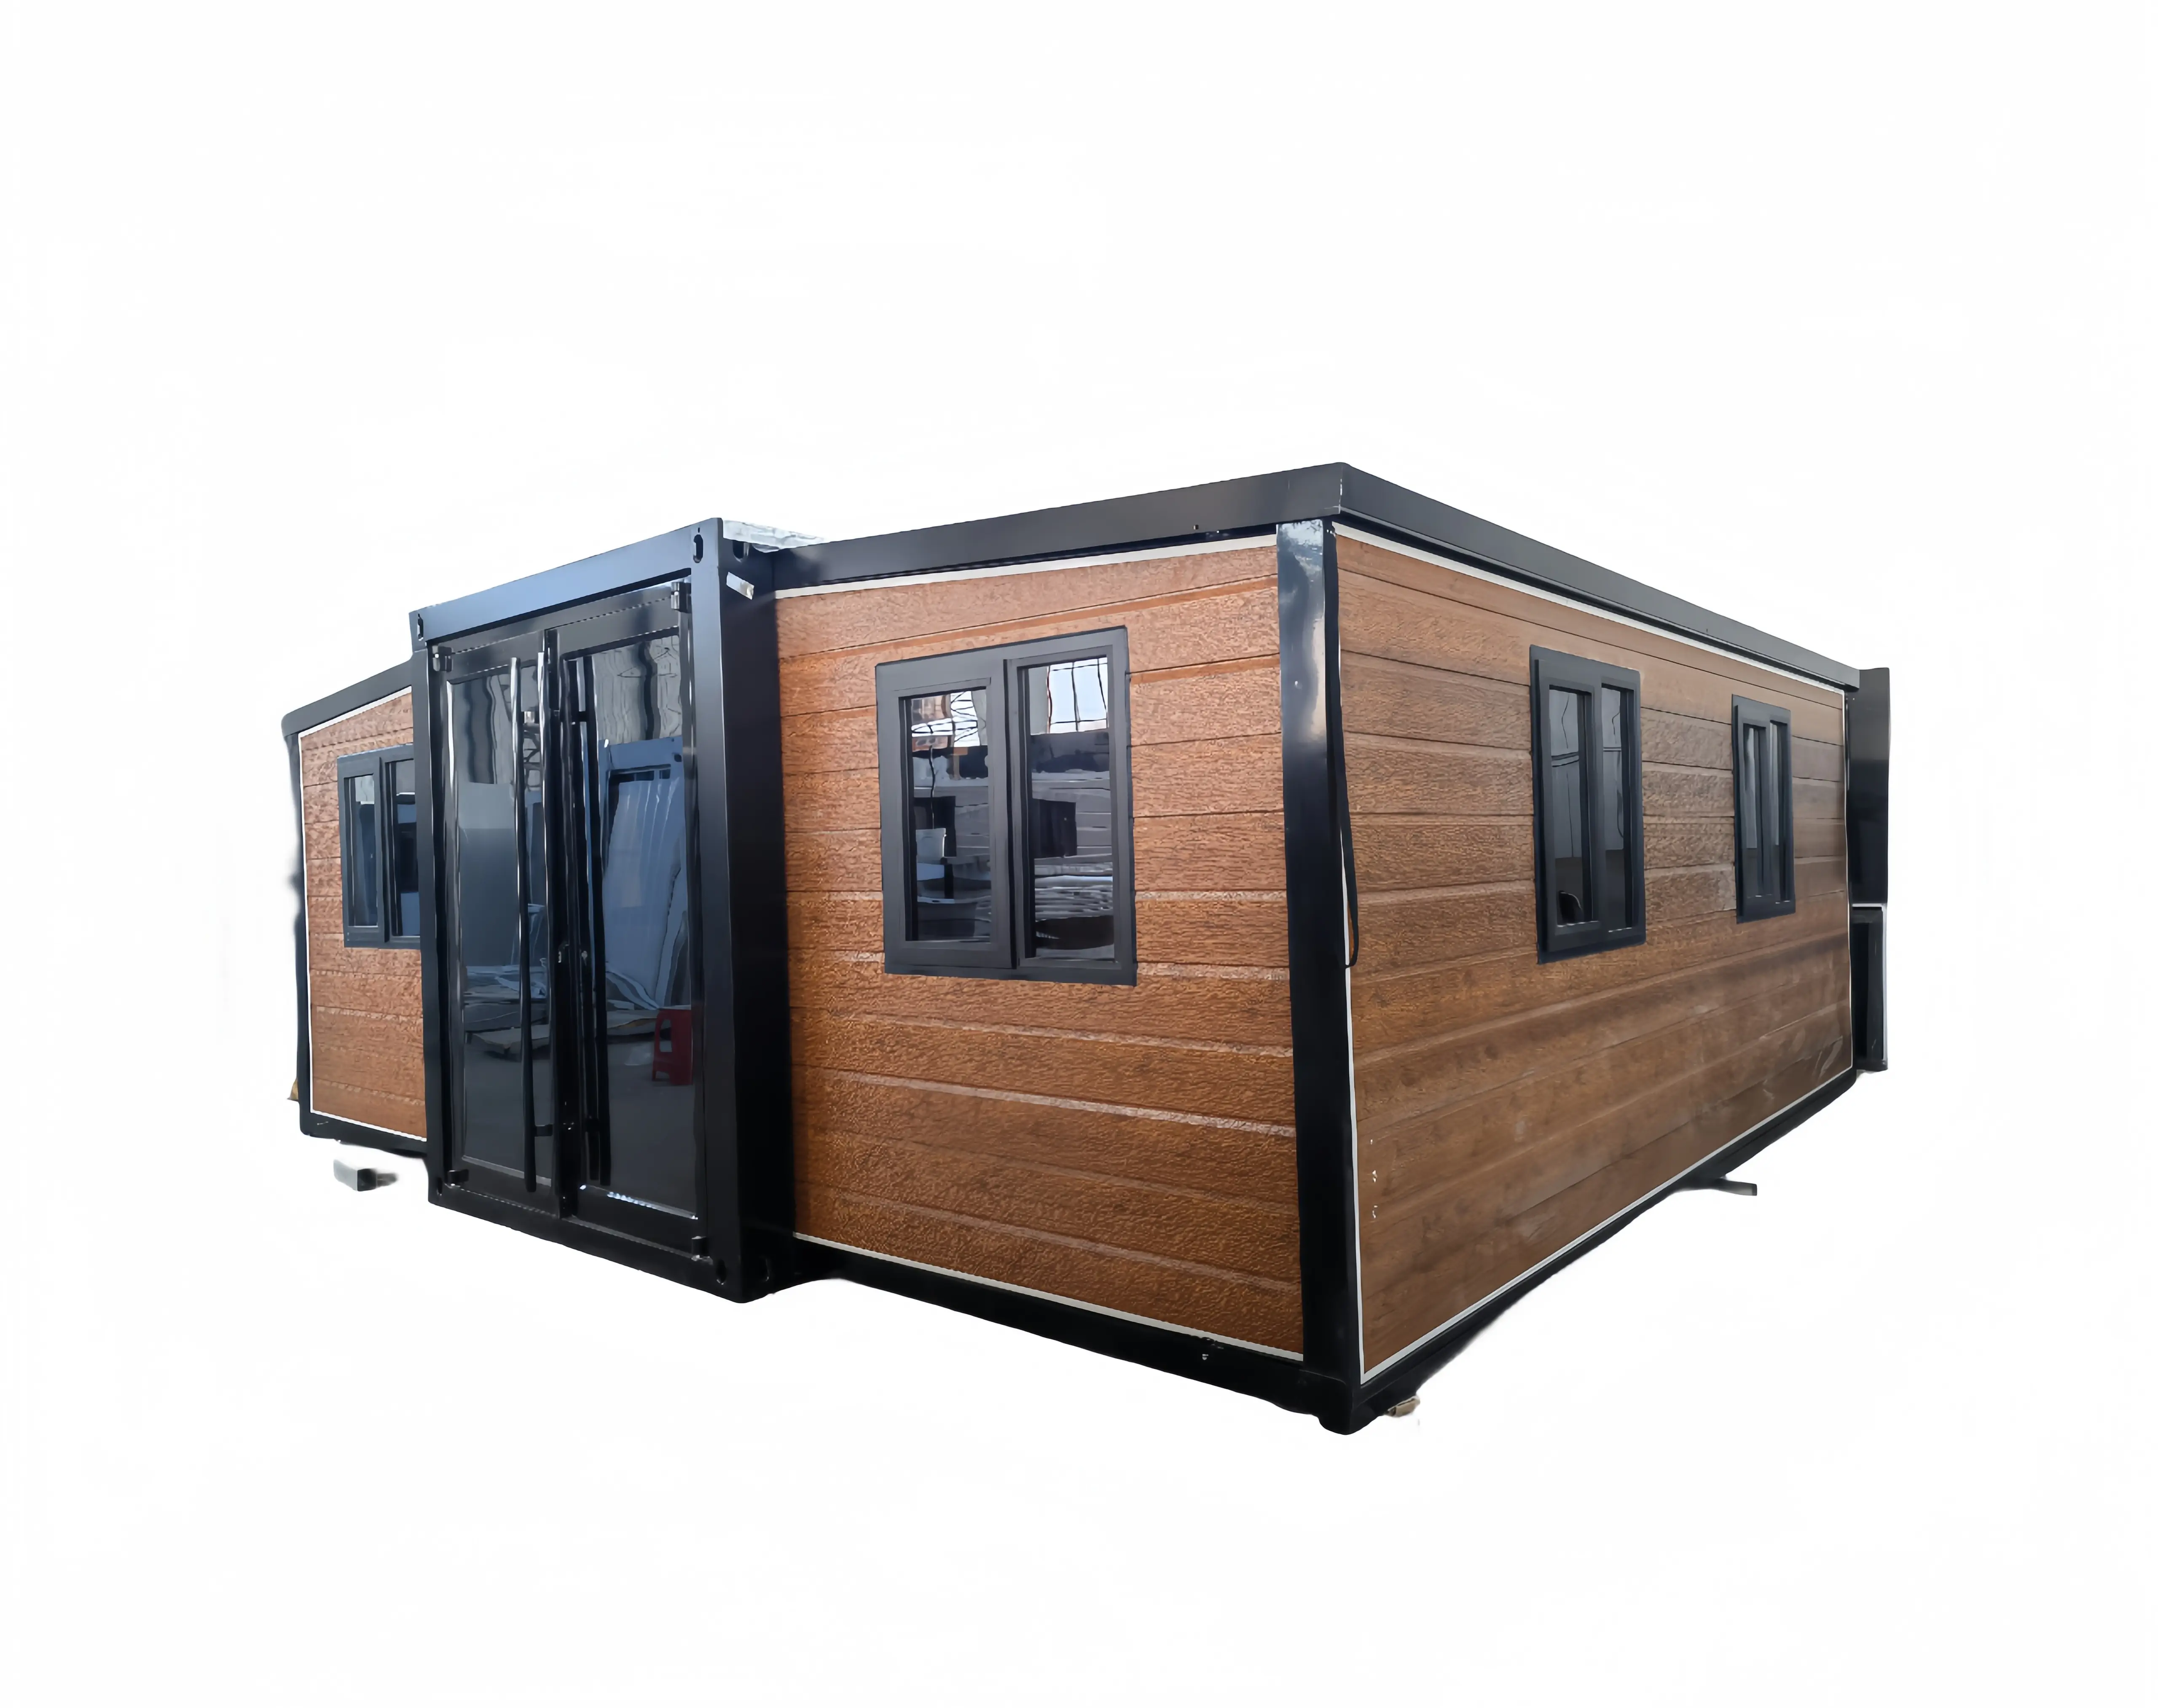 Maison de 20 pieds à 2 chambres à coucher maison pliable portable mobile préfabriqué extensible maison en conteneur avec salle de bain complète